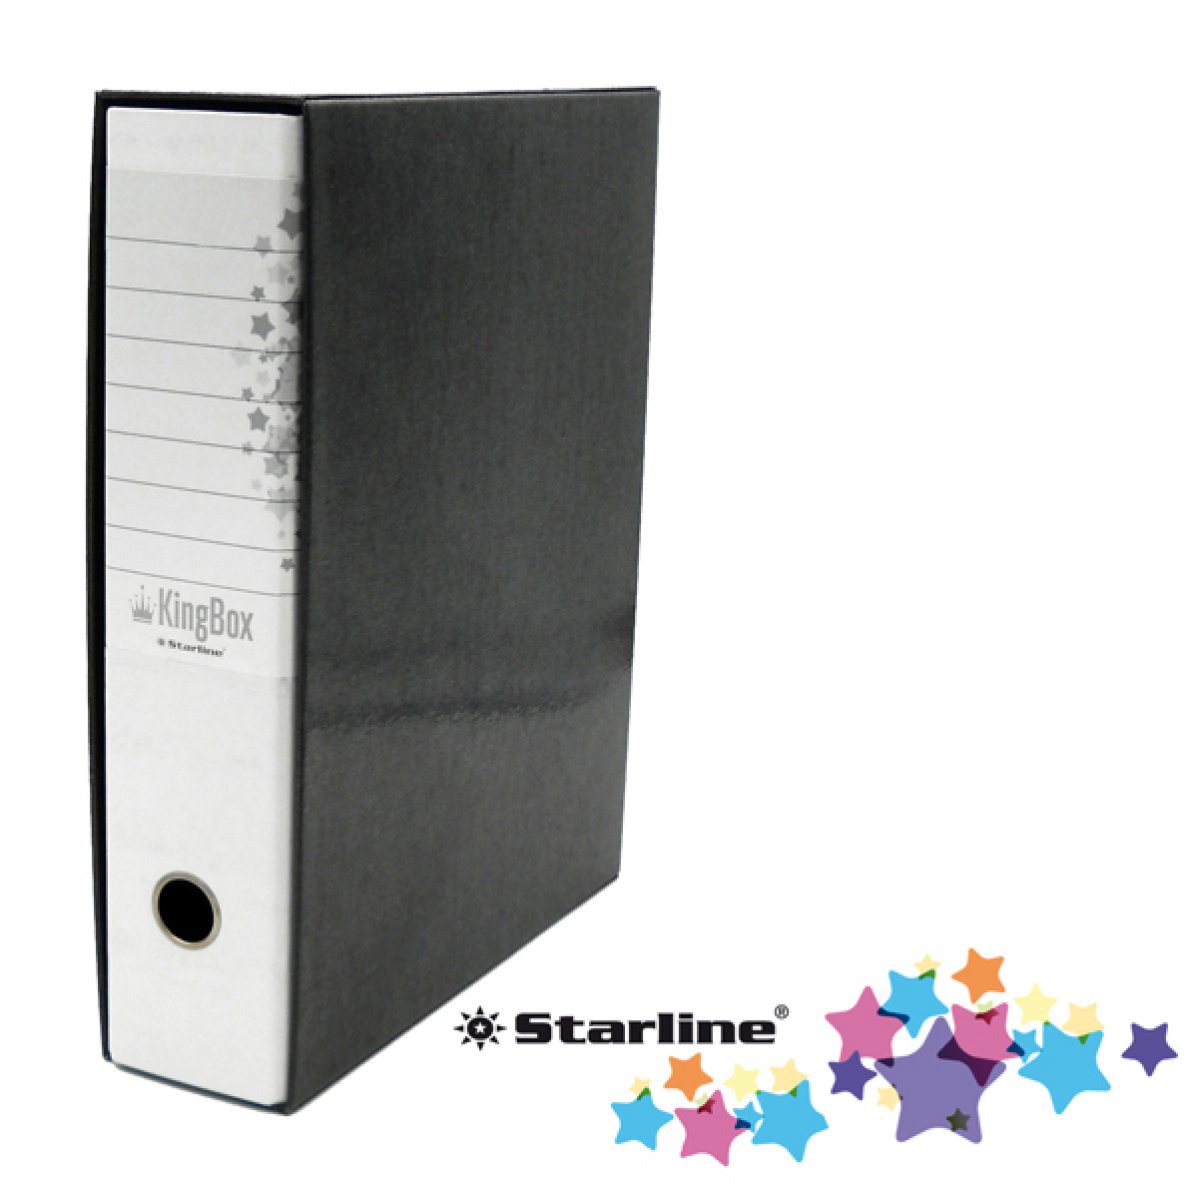 Registratore Kingbox - dorso 8 cm - protocollo 23x33 cm - bianco - Starline 